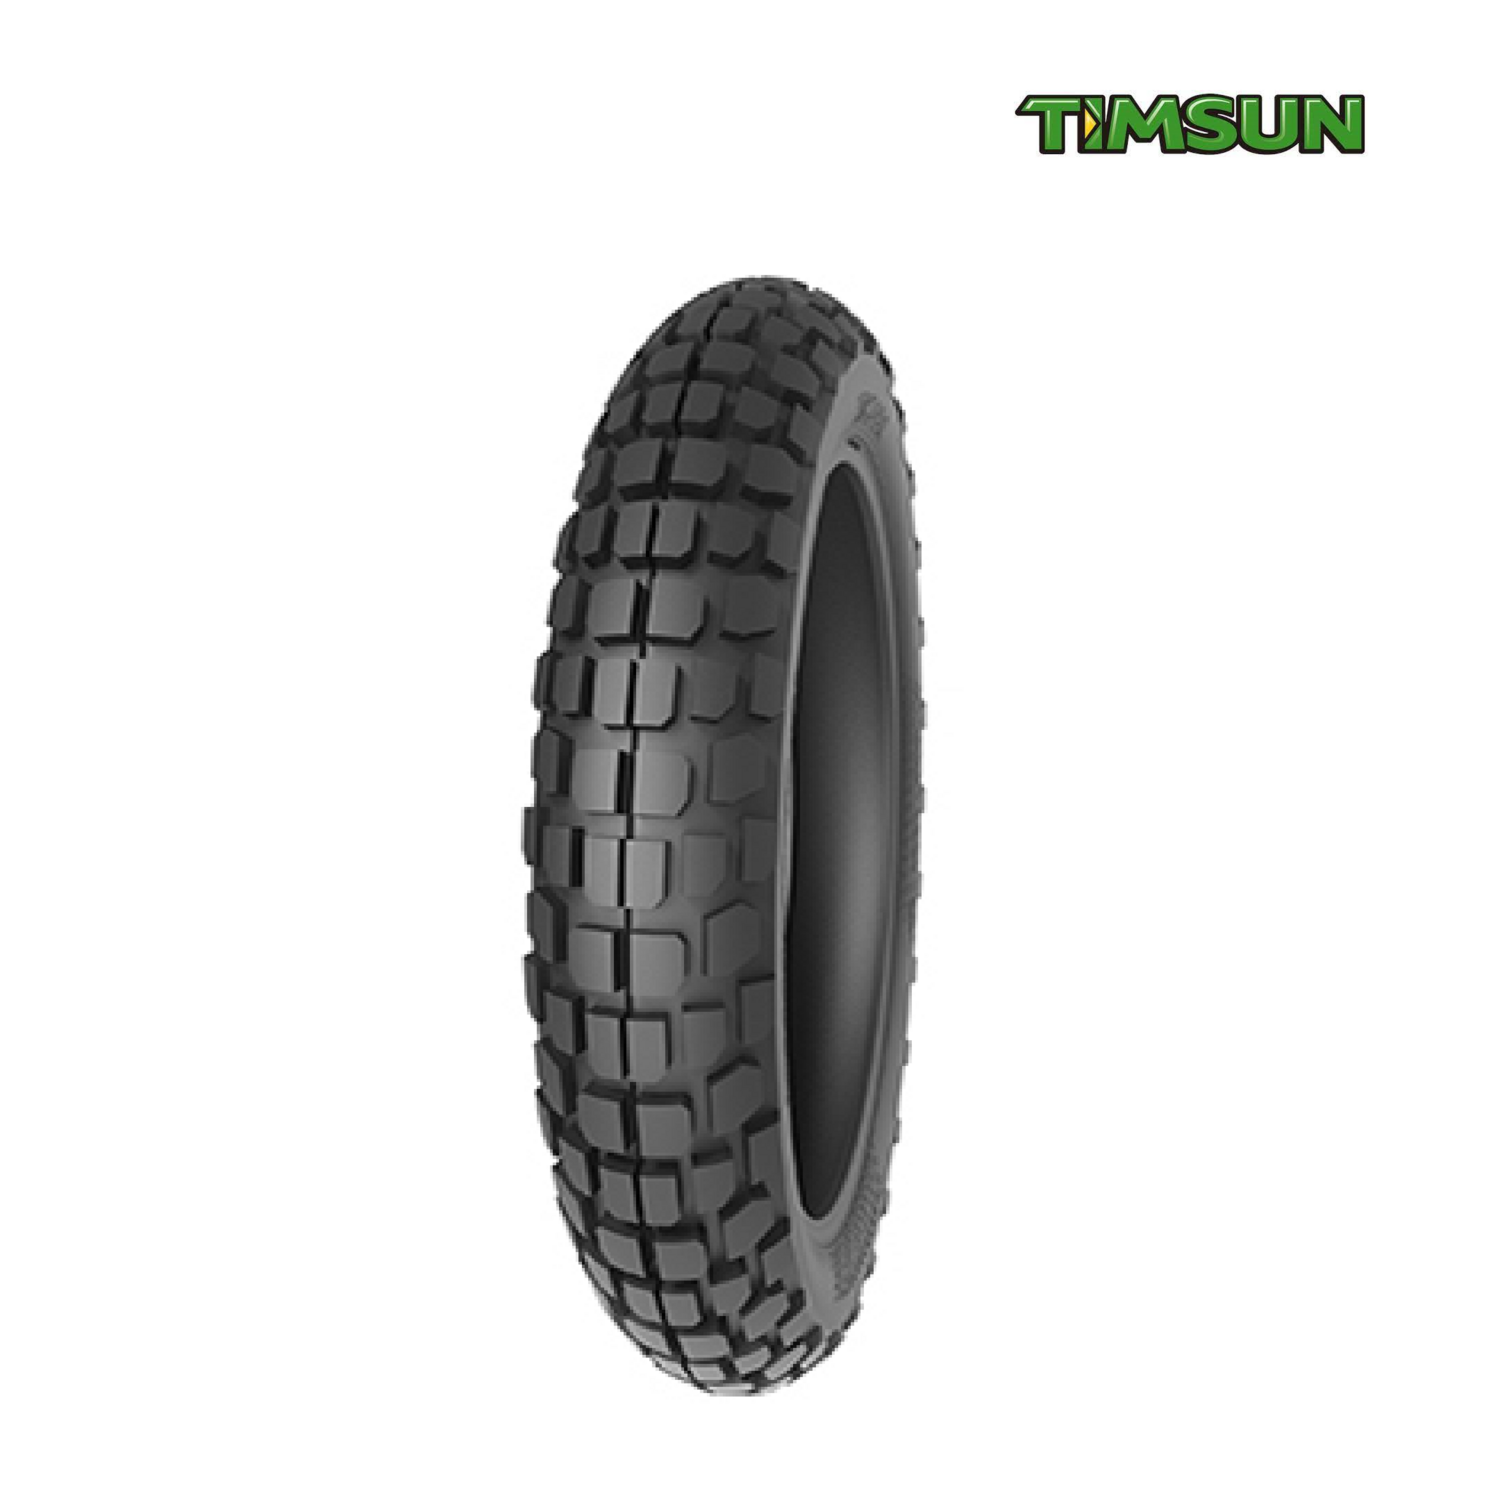 TIMSUN TS 818 140/80-18 Two Wheeler Rear Tyre